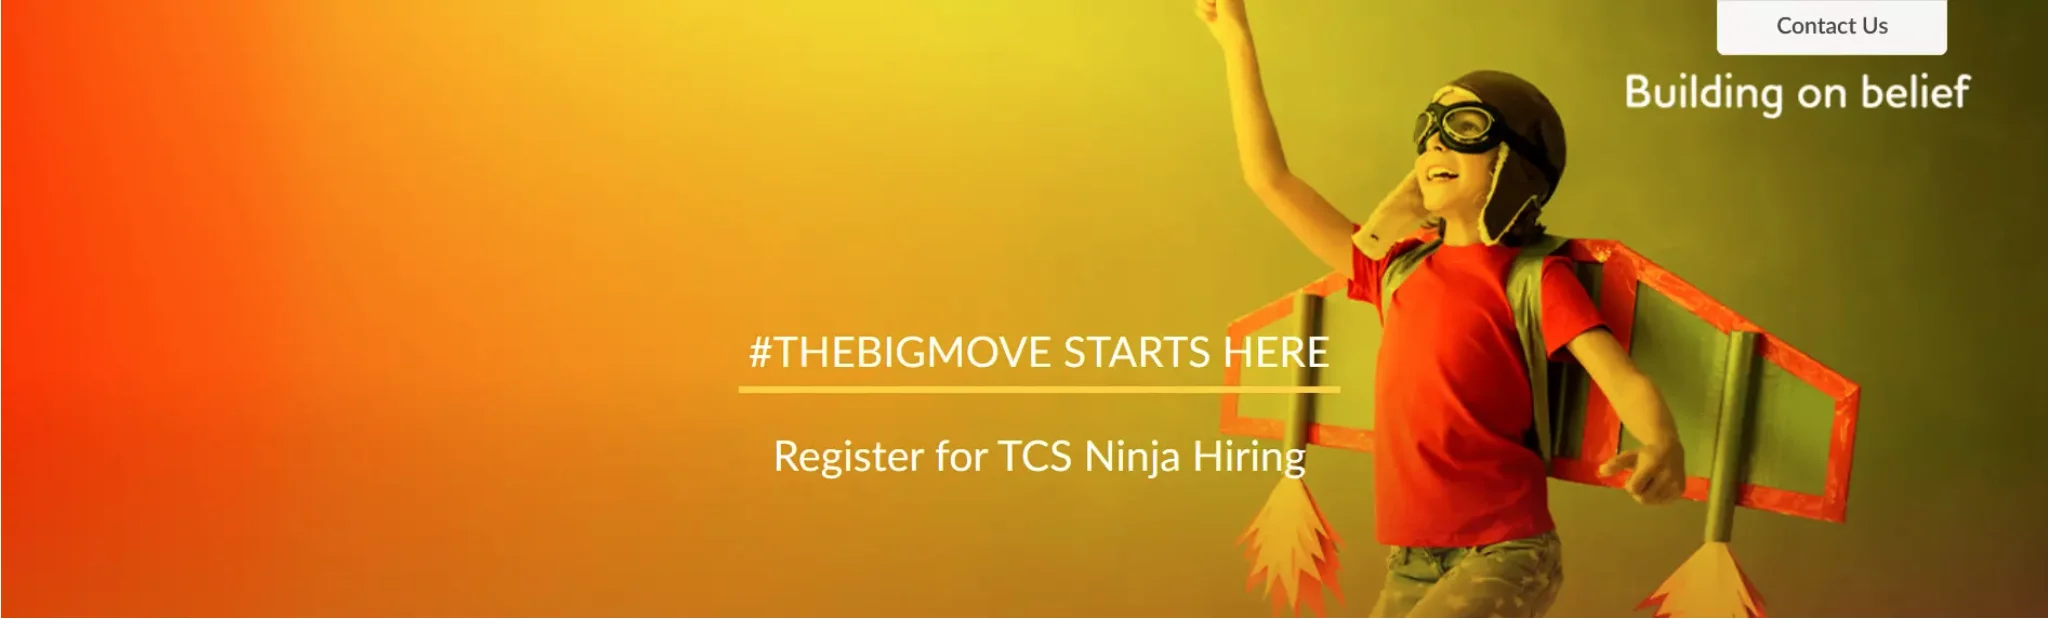 TCS-Ninja-Registration-Process